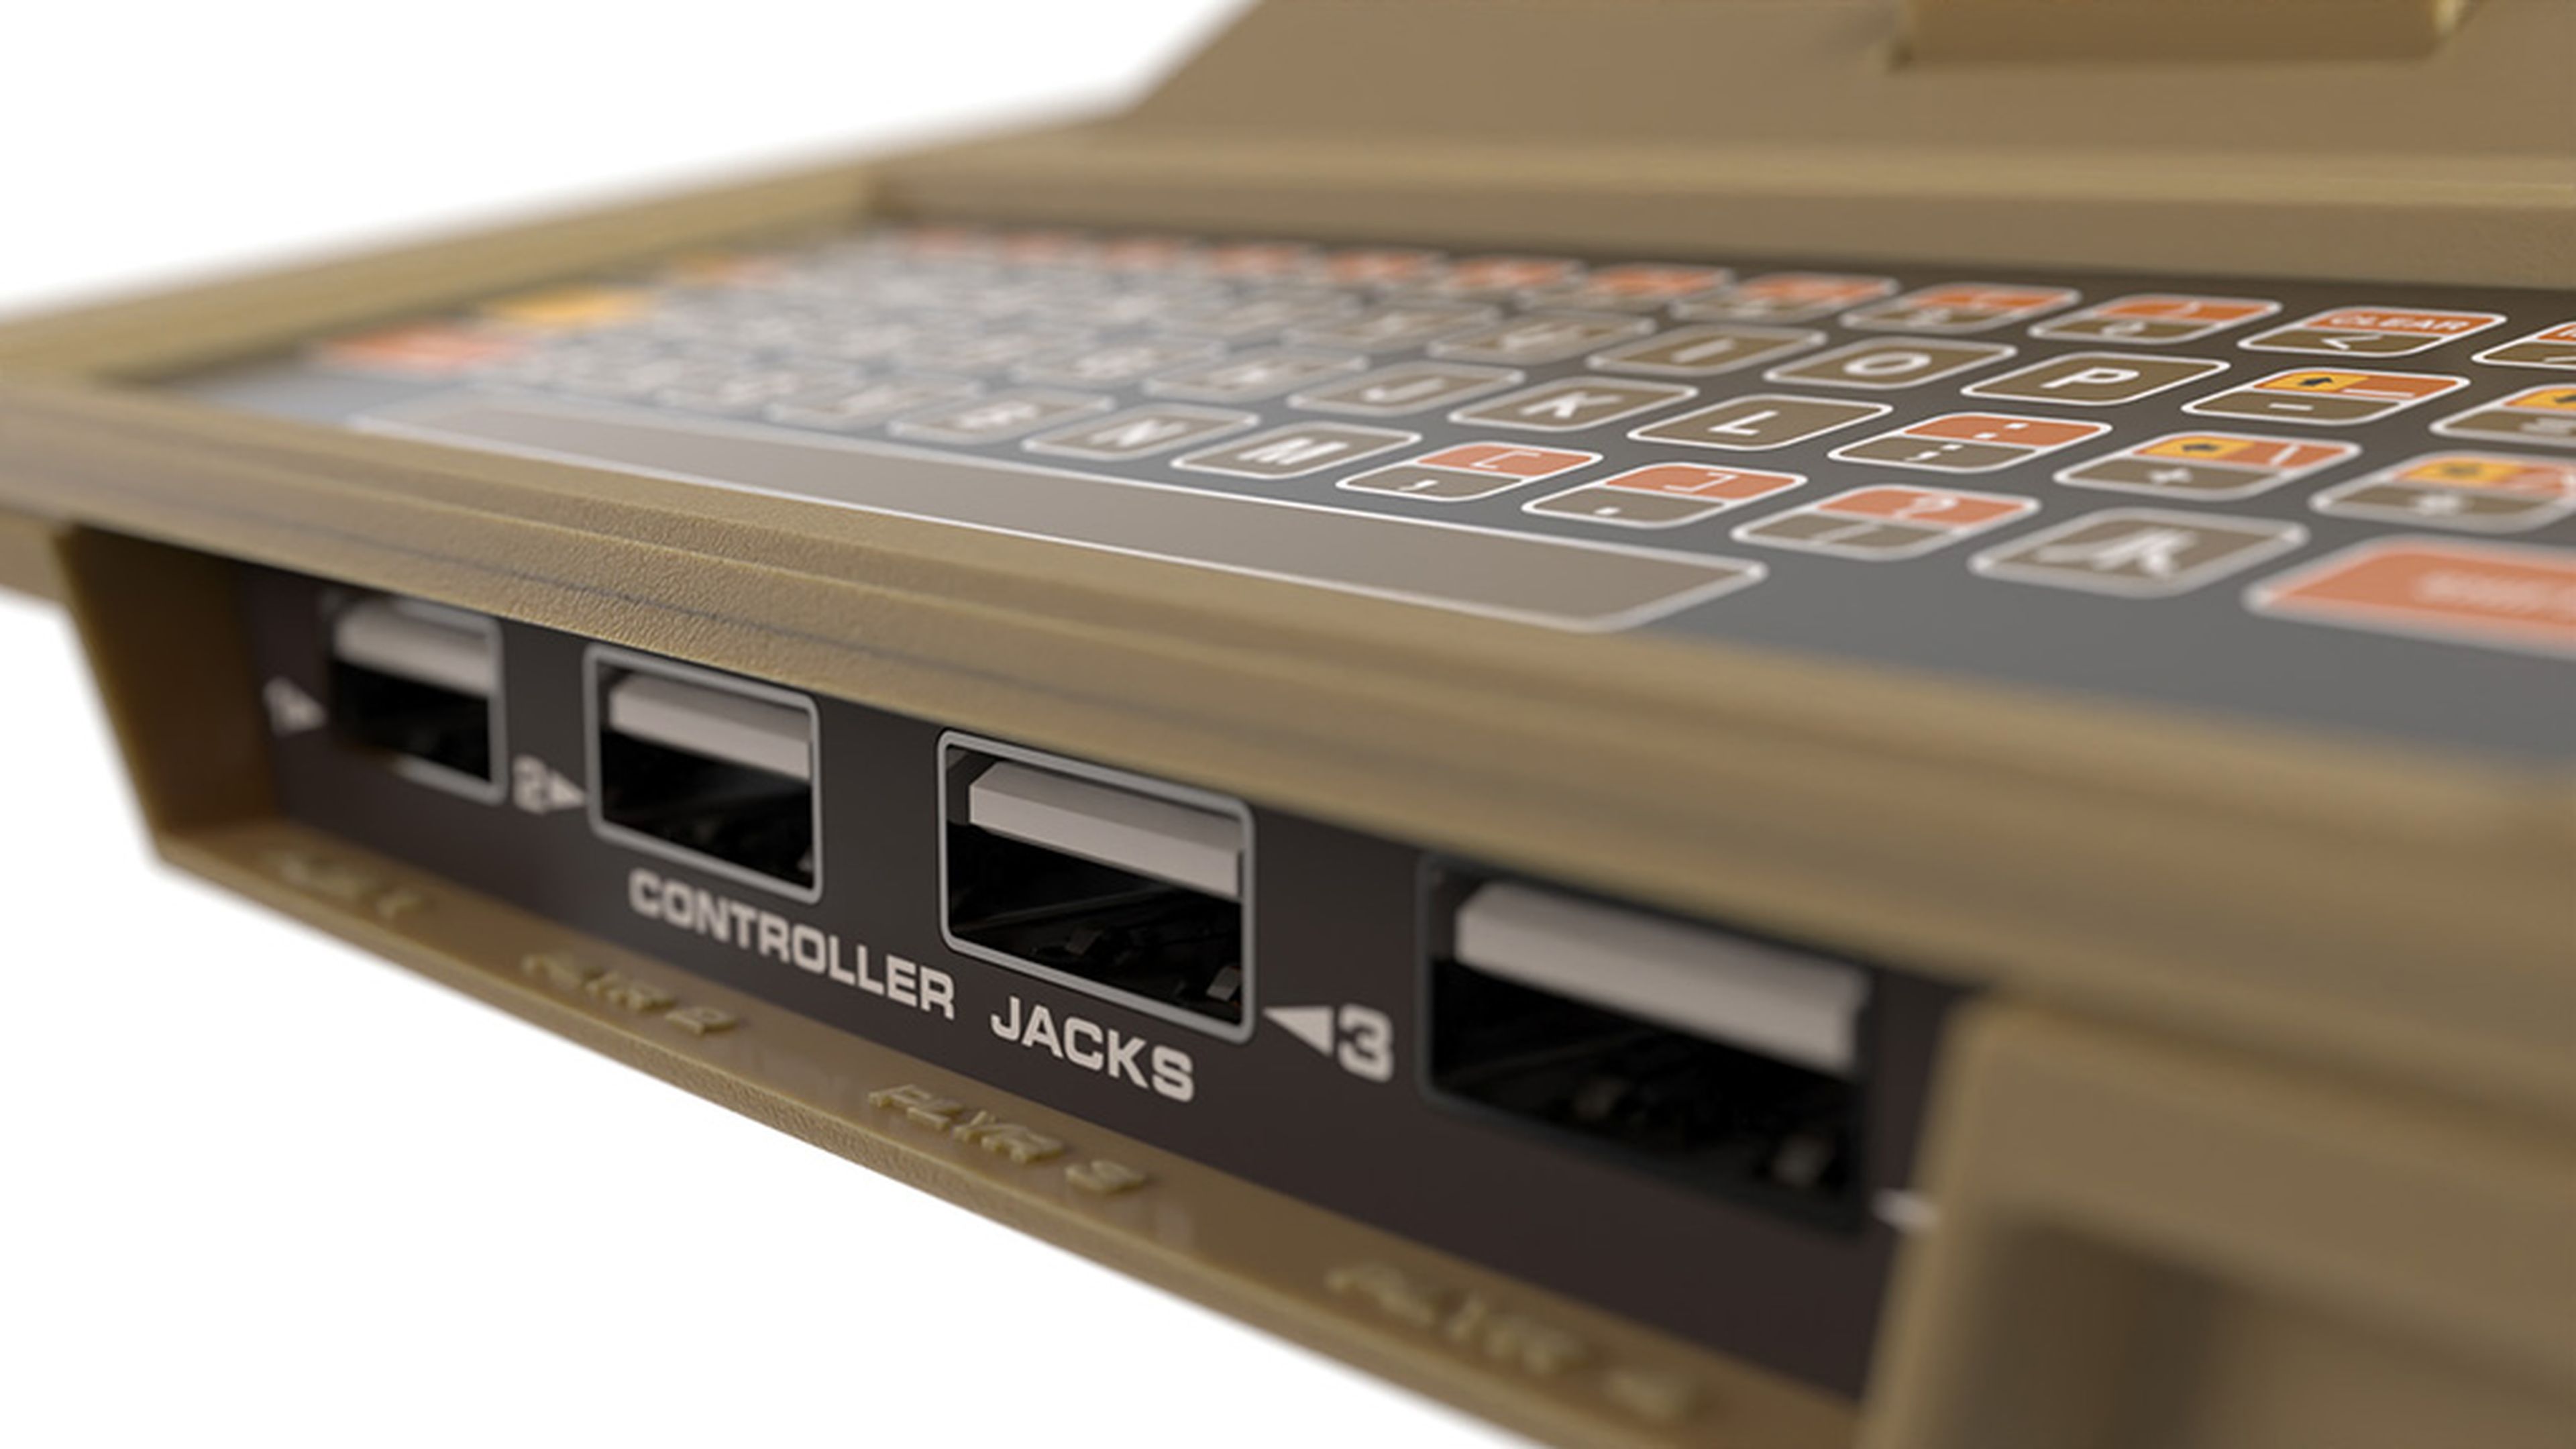 Atari The400 Mini - puertos USB